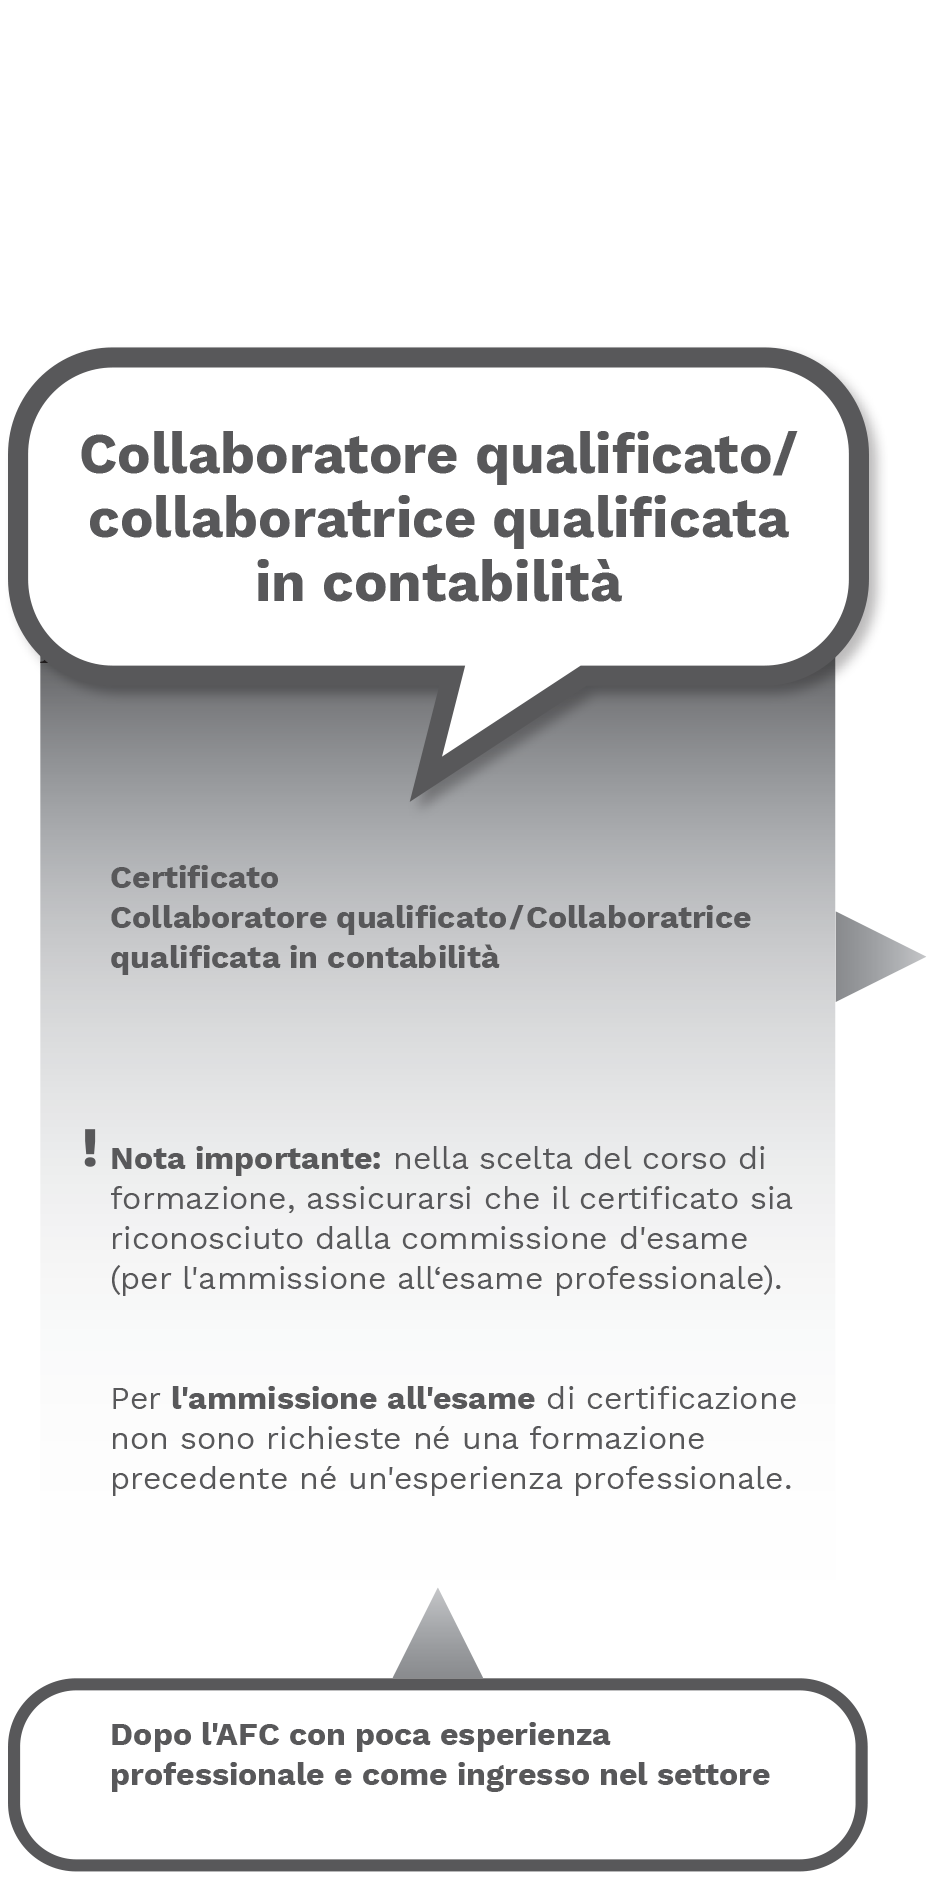 Collaboratrice qualificata / Collaboratore qualificato in contabilità 